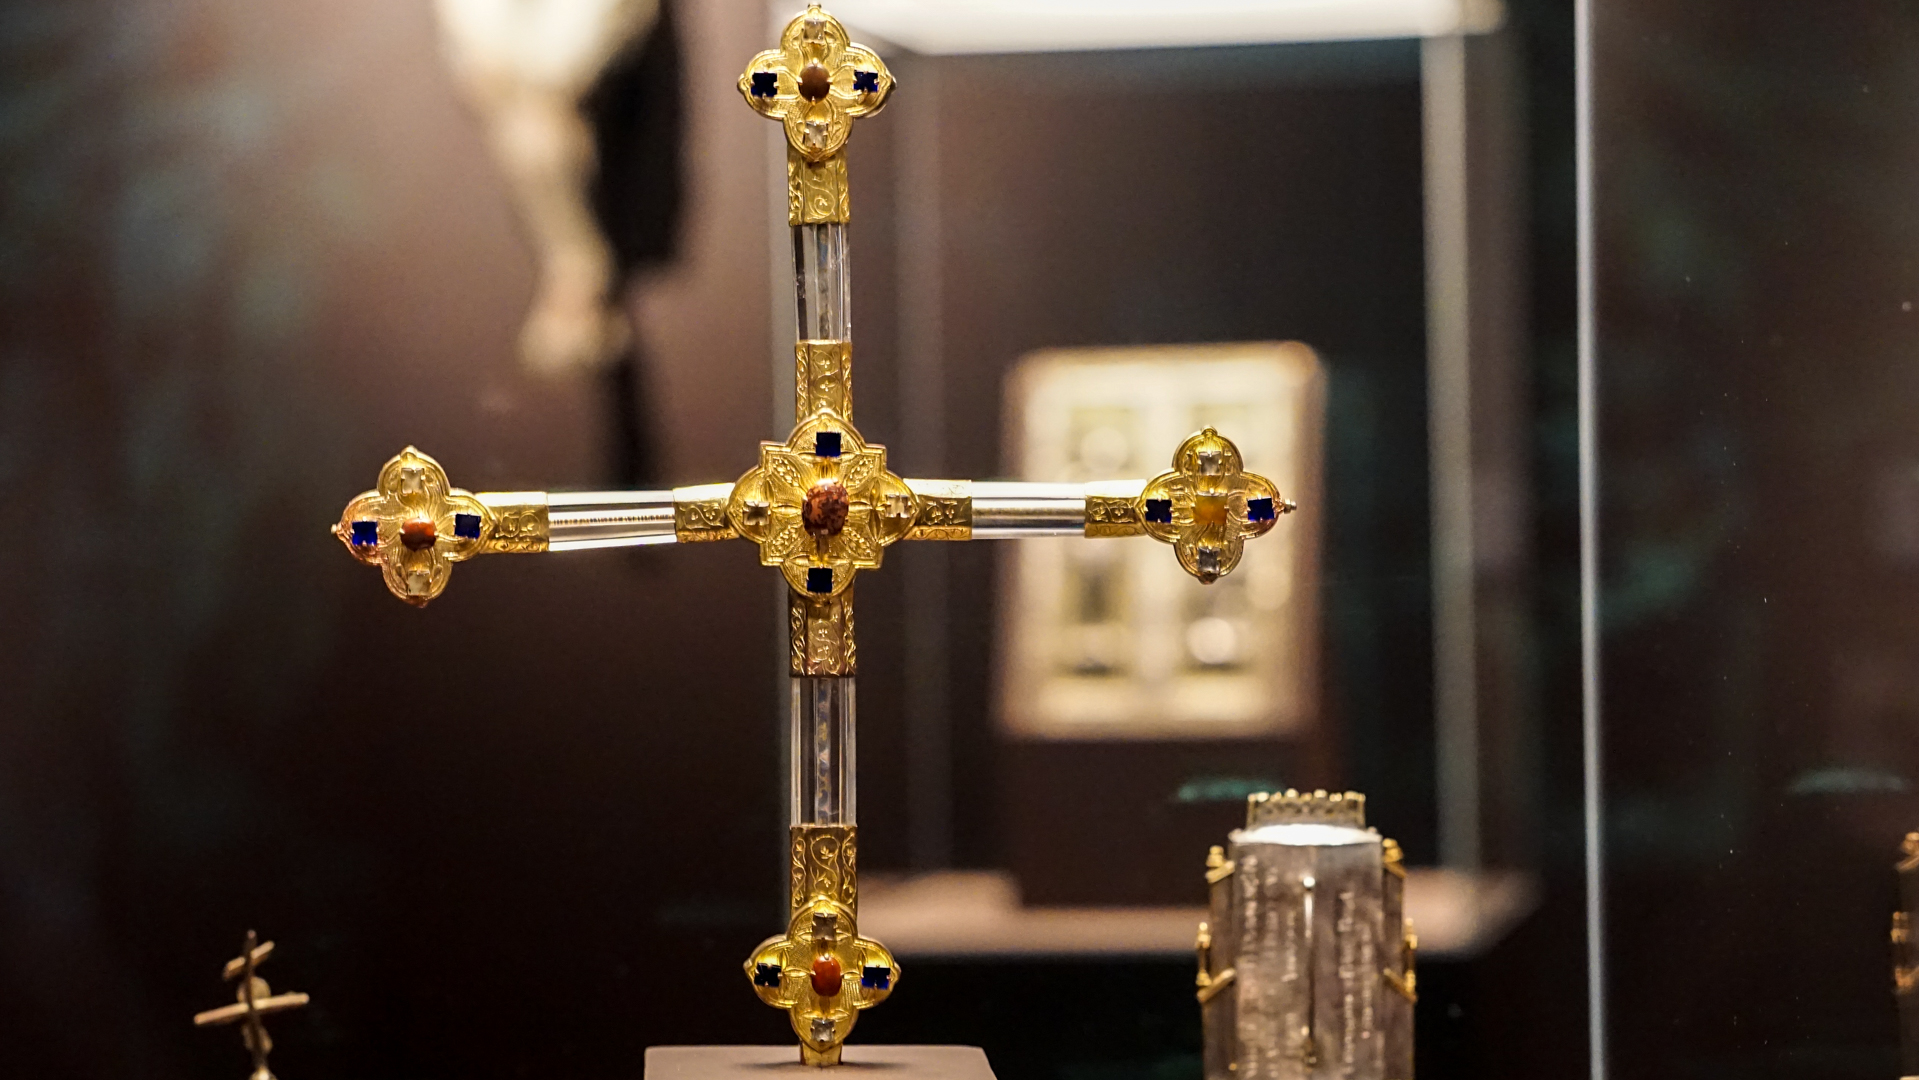 Croix reliquaire en cristal et orfèvrerie, XIVe siècle, Fribourg | © Maurice Page